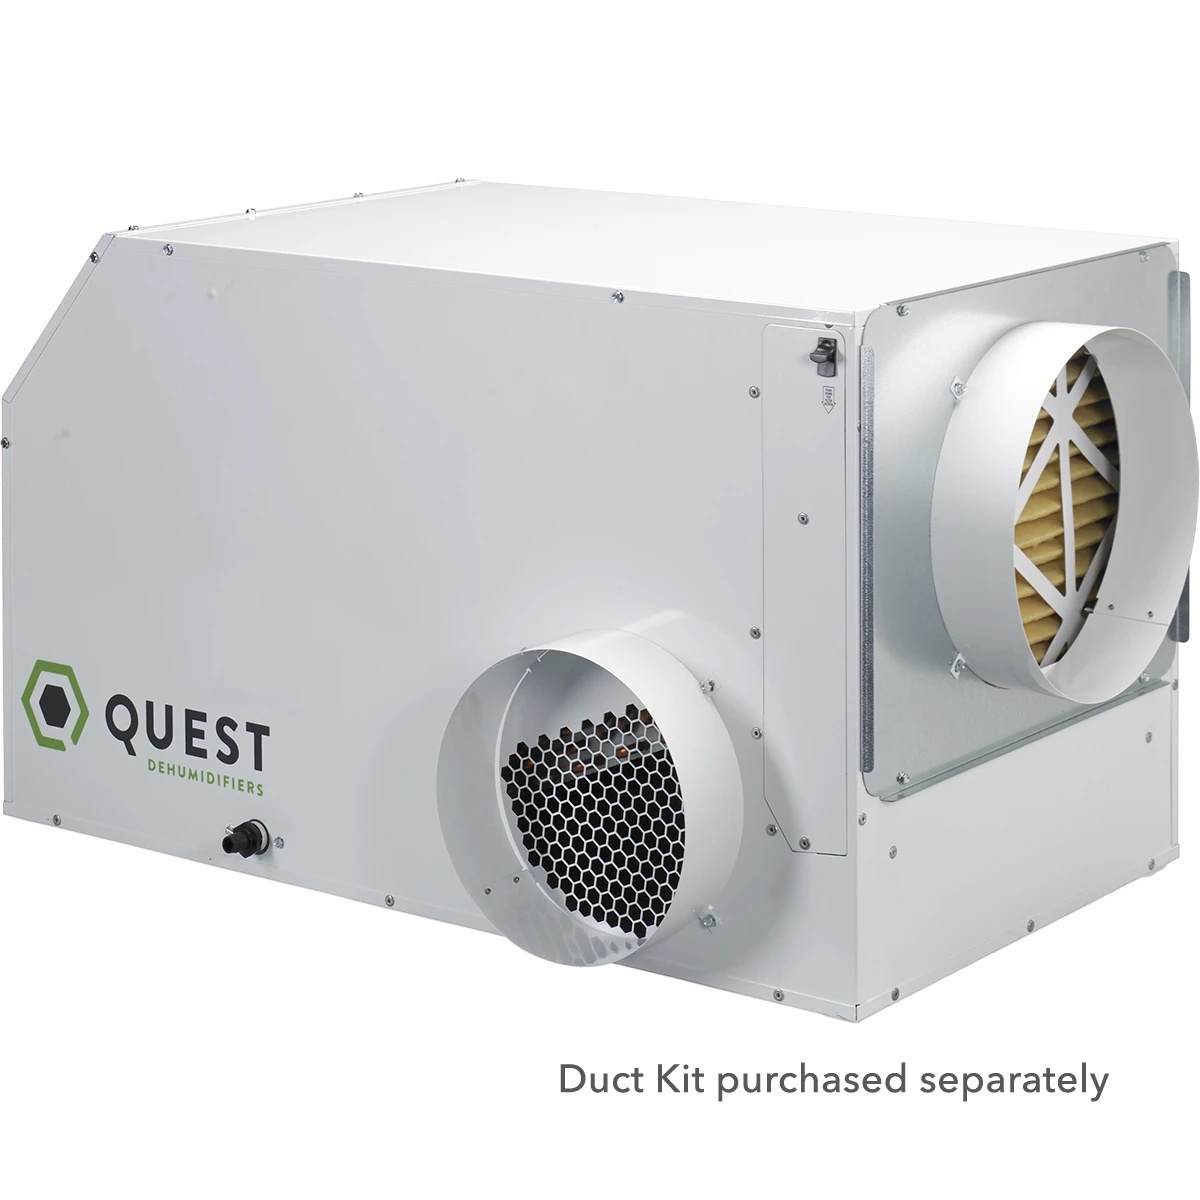 Quest Dual 225 Overhead Dehumidifier